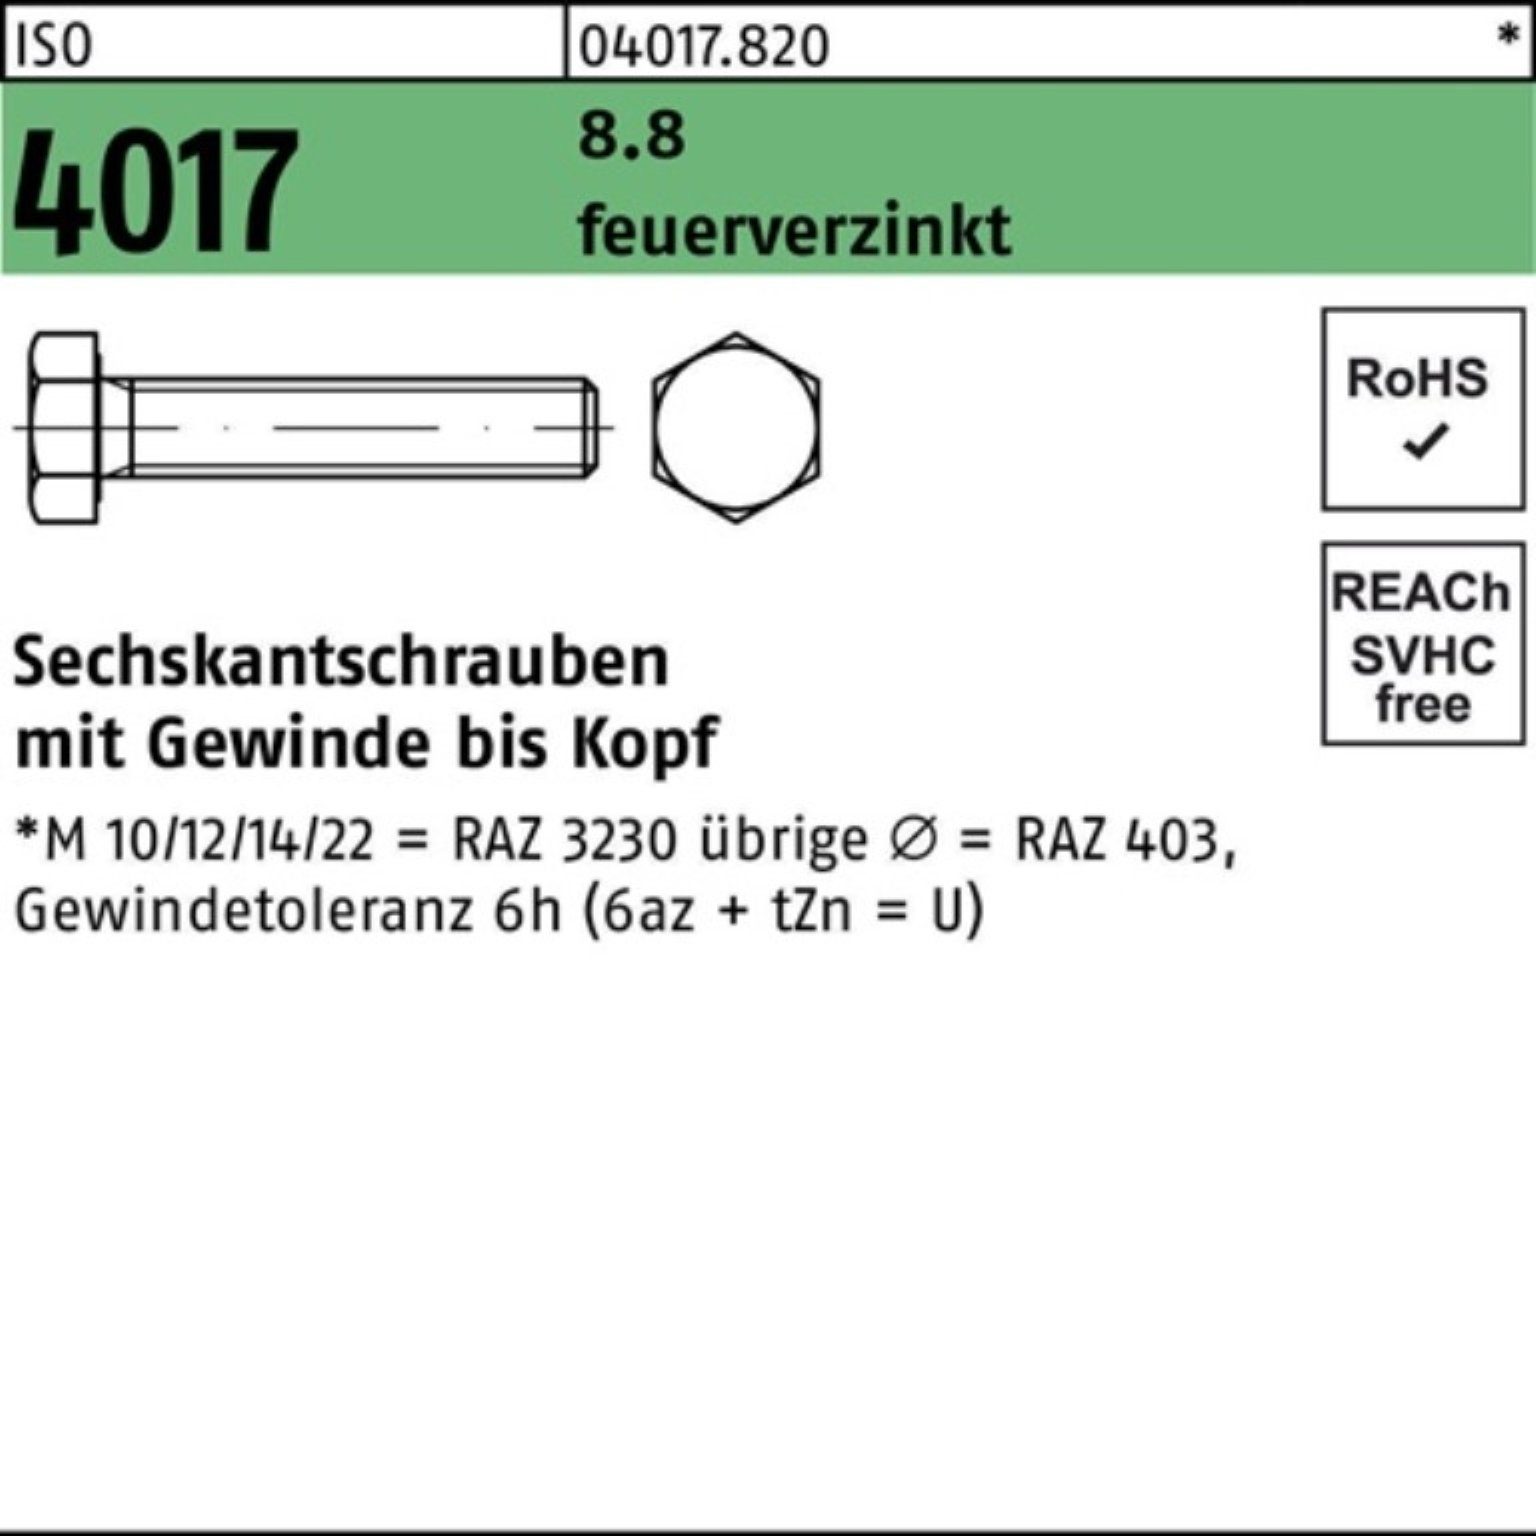 Bufab Sechskantschraube 100er Pack M16x St 1 4017 280 Sechskantschraube 8.8 VG feuerverz. ISO